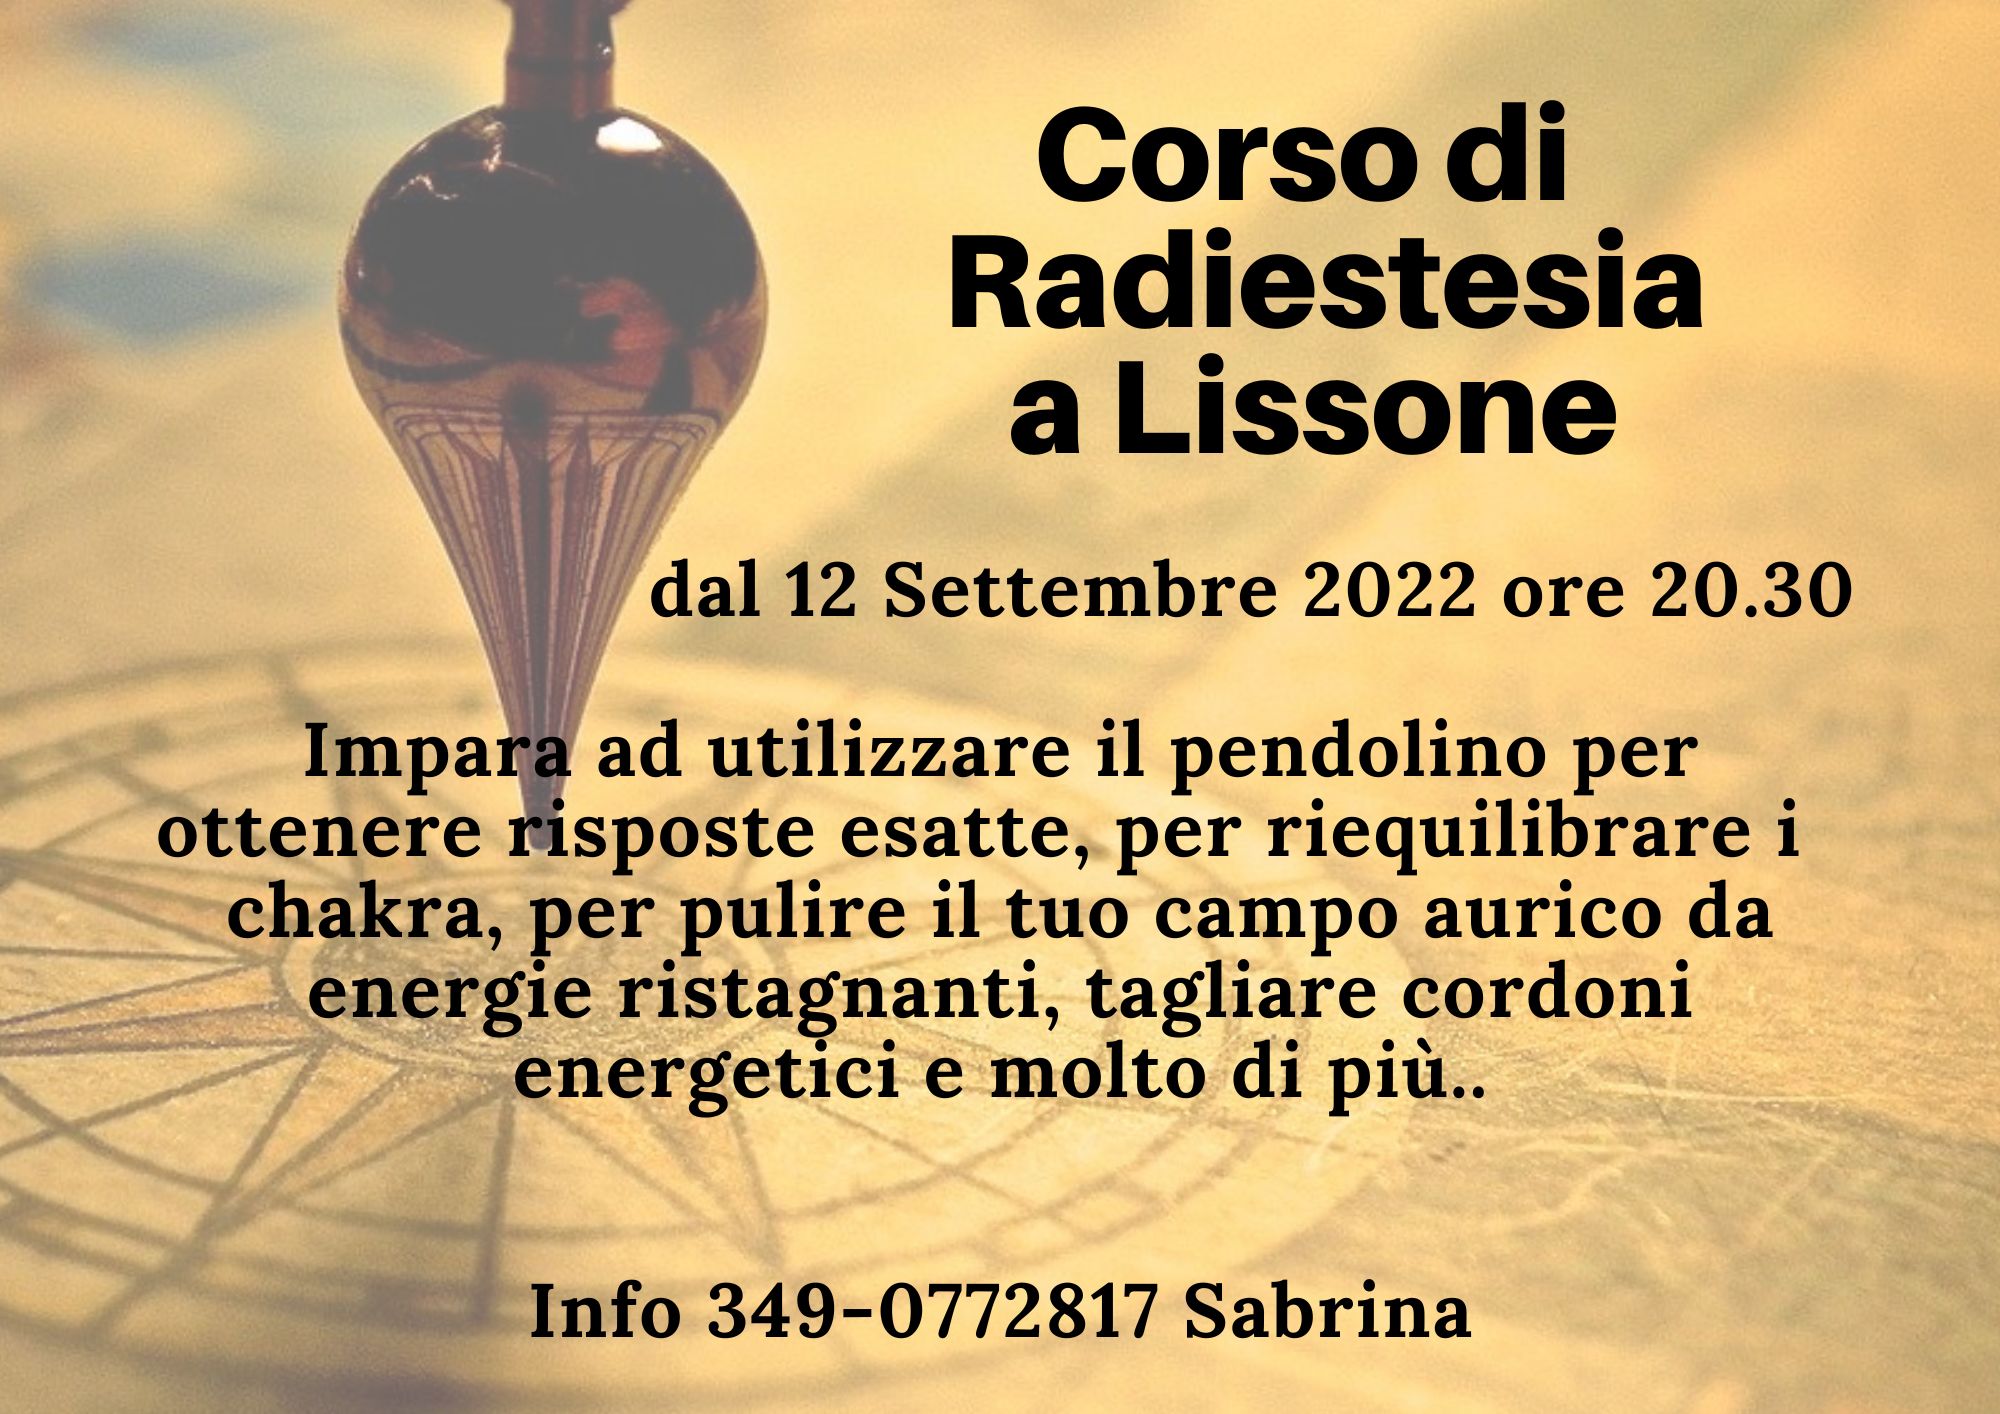 Corso RADIESTESIA - Lissone (Monza e Brianza)